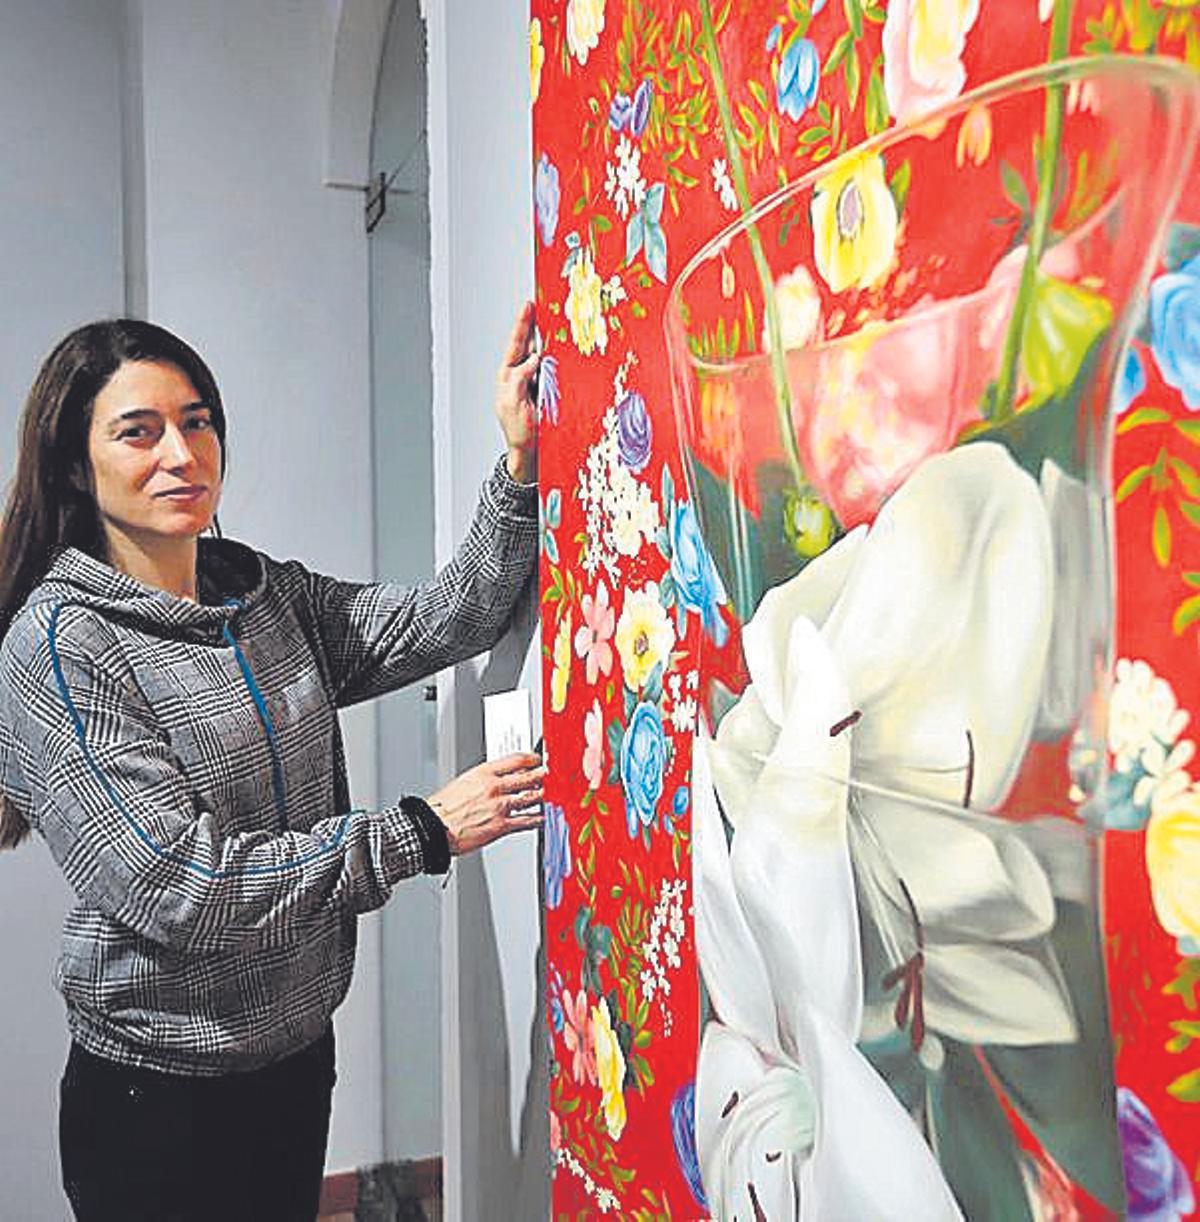 La artista, investigadora y docente Marisa Vadillo, junto a una de sus obras en la exposición 'Outsider'.